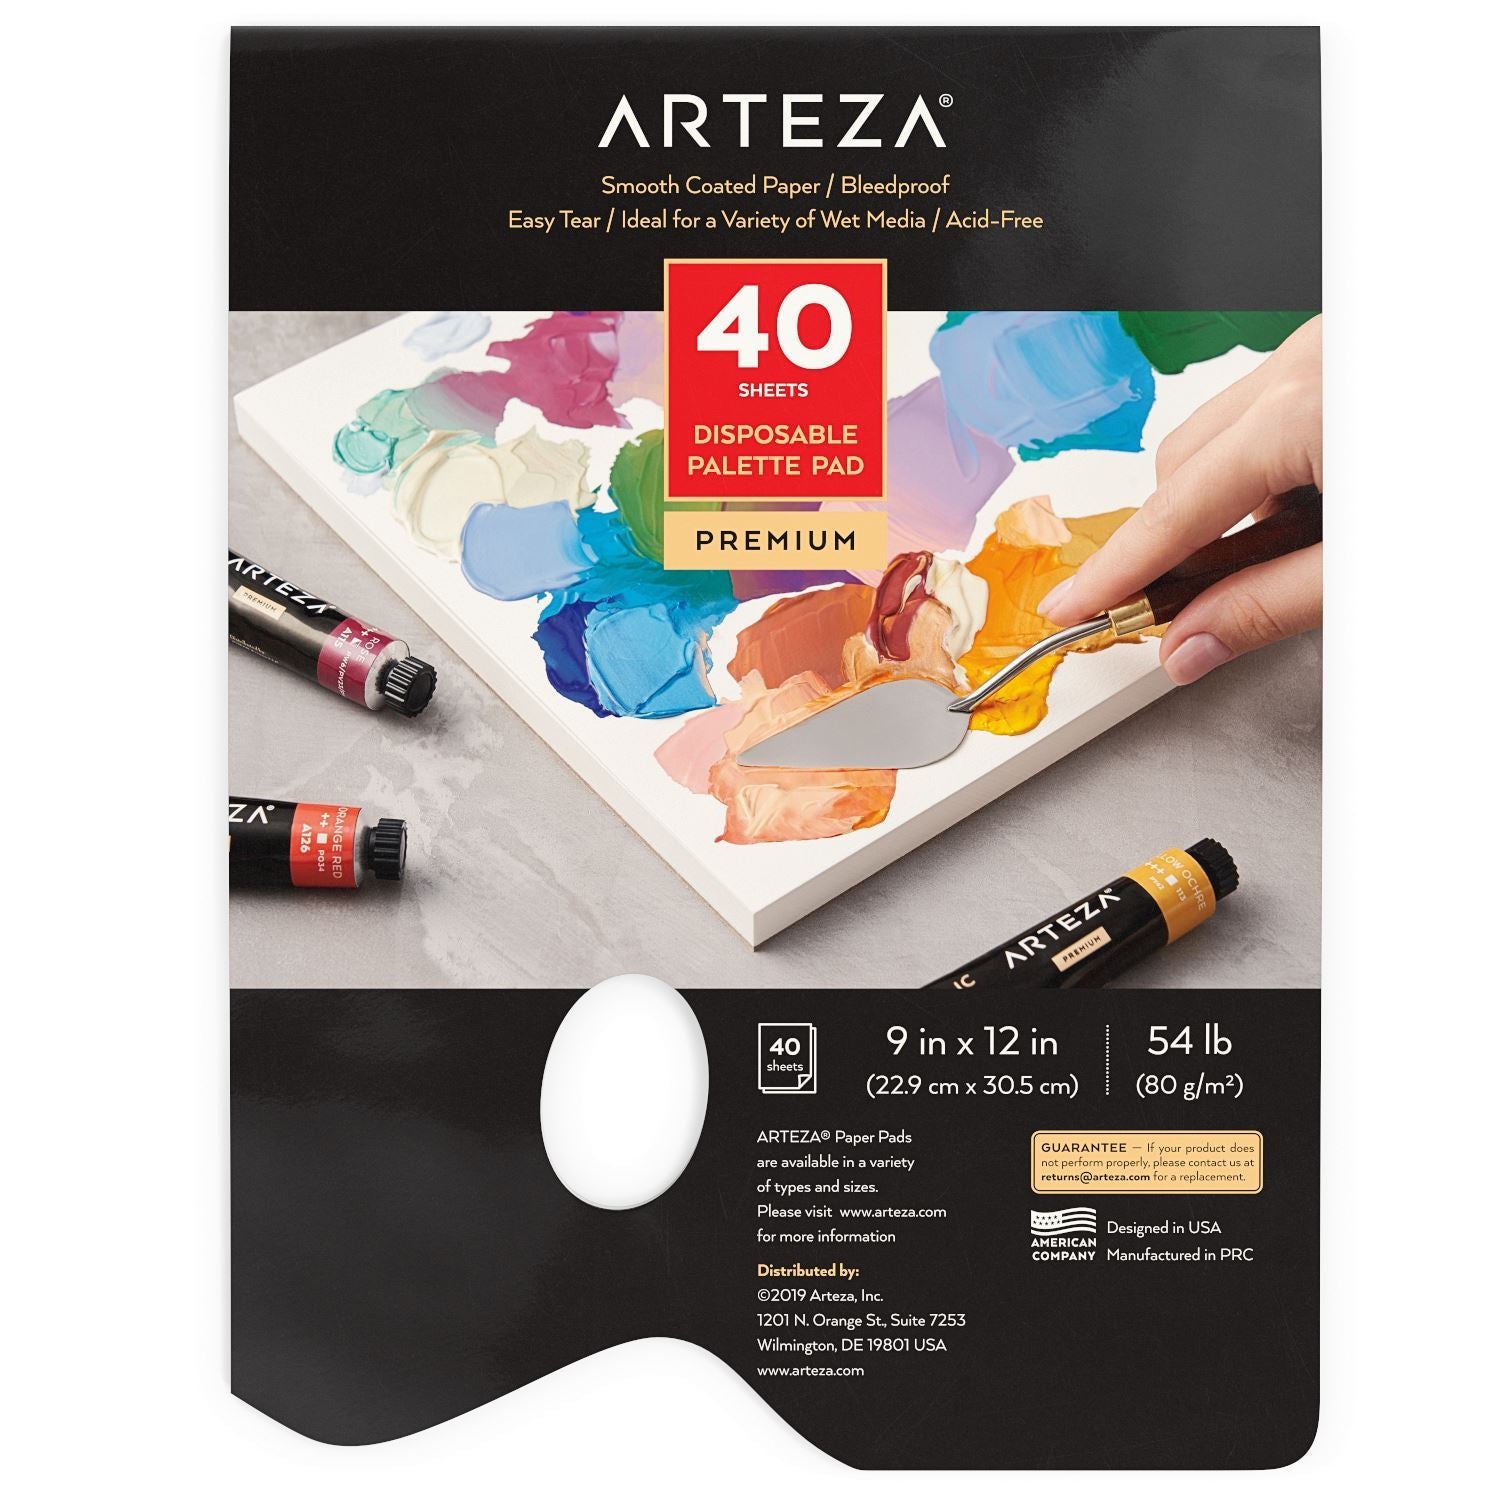 Disposable Palette Pad, 9 x 12, 40 Sheets –